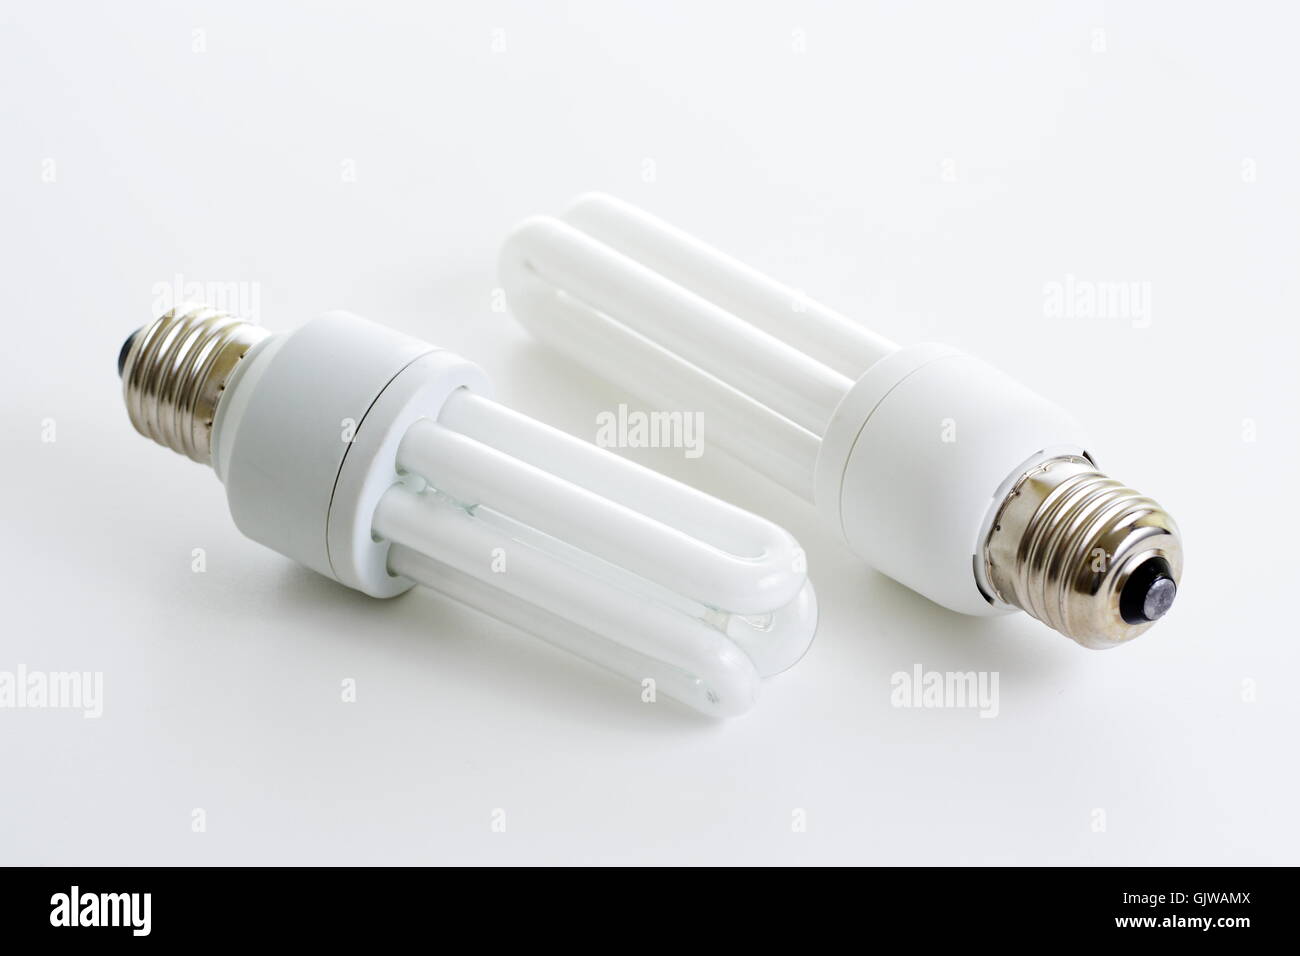 Lámparas ahorradoras de energía fotografías e imágenes de alta resolución -  Alamy